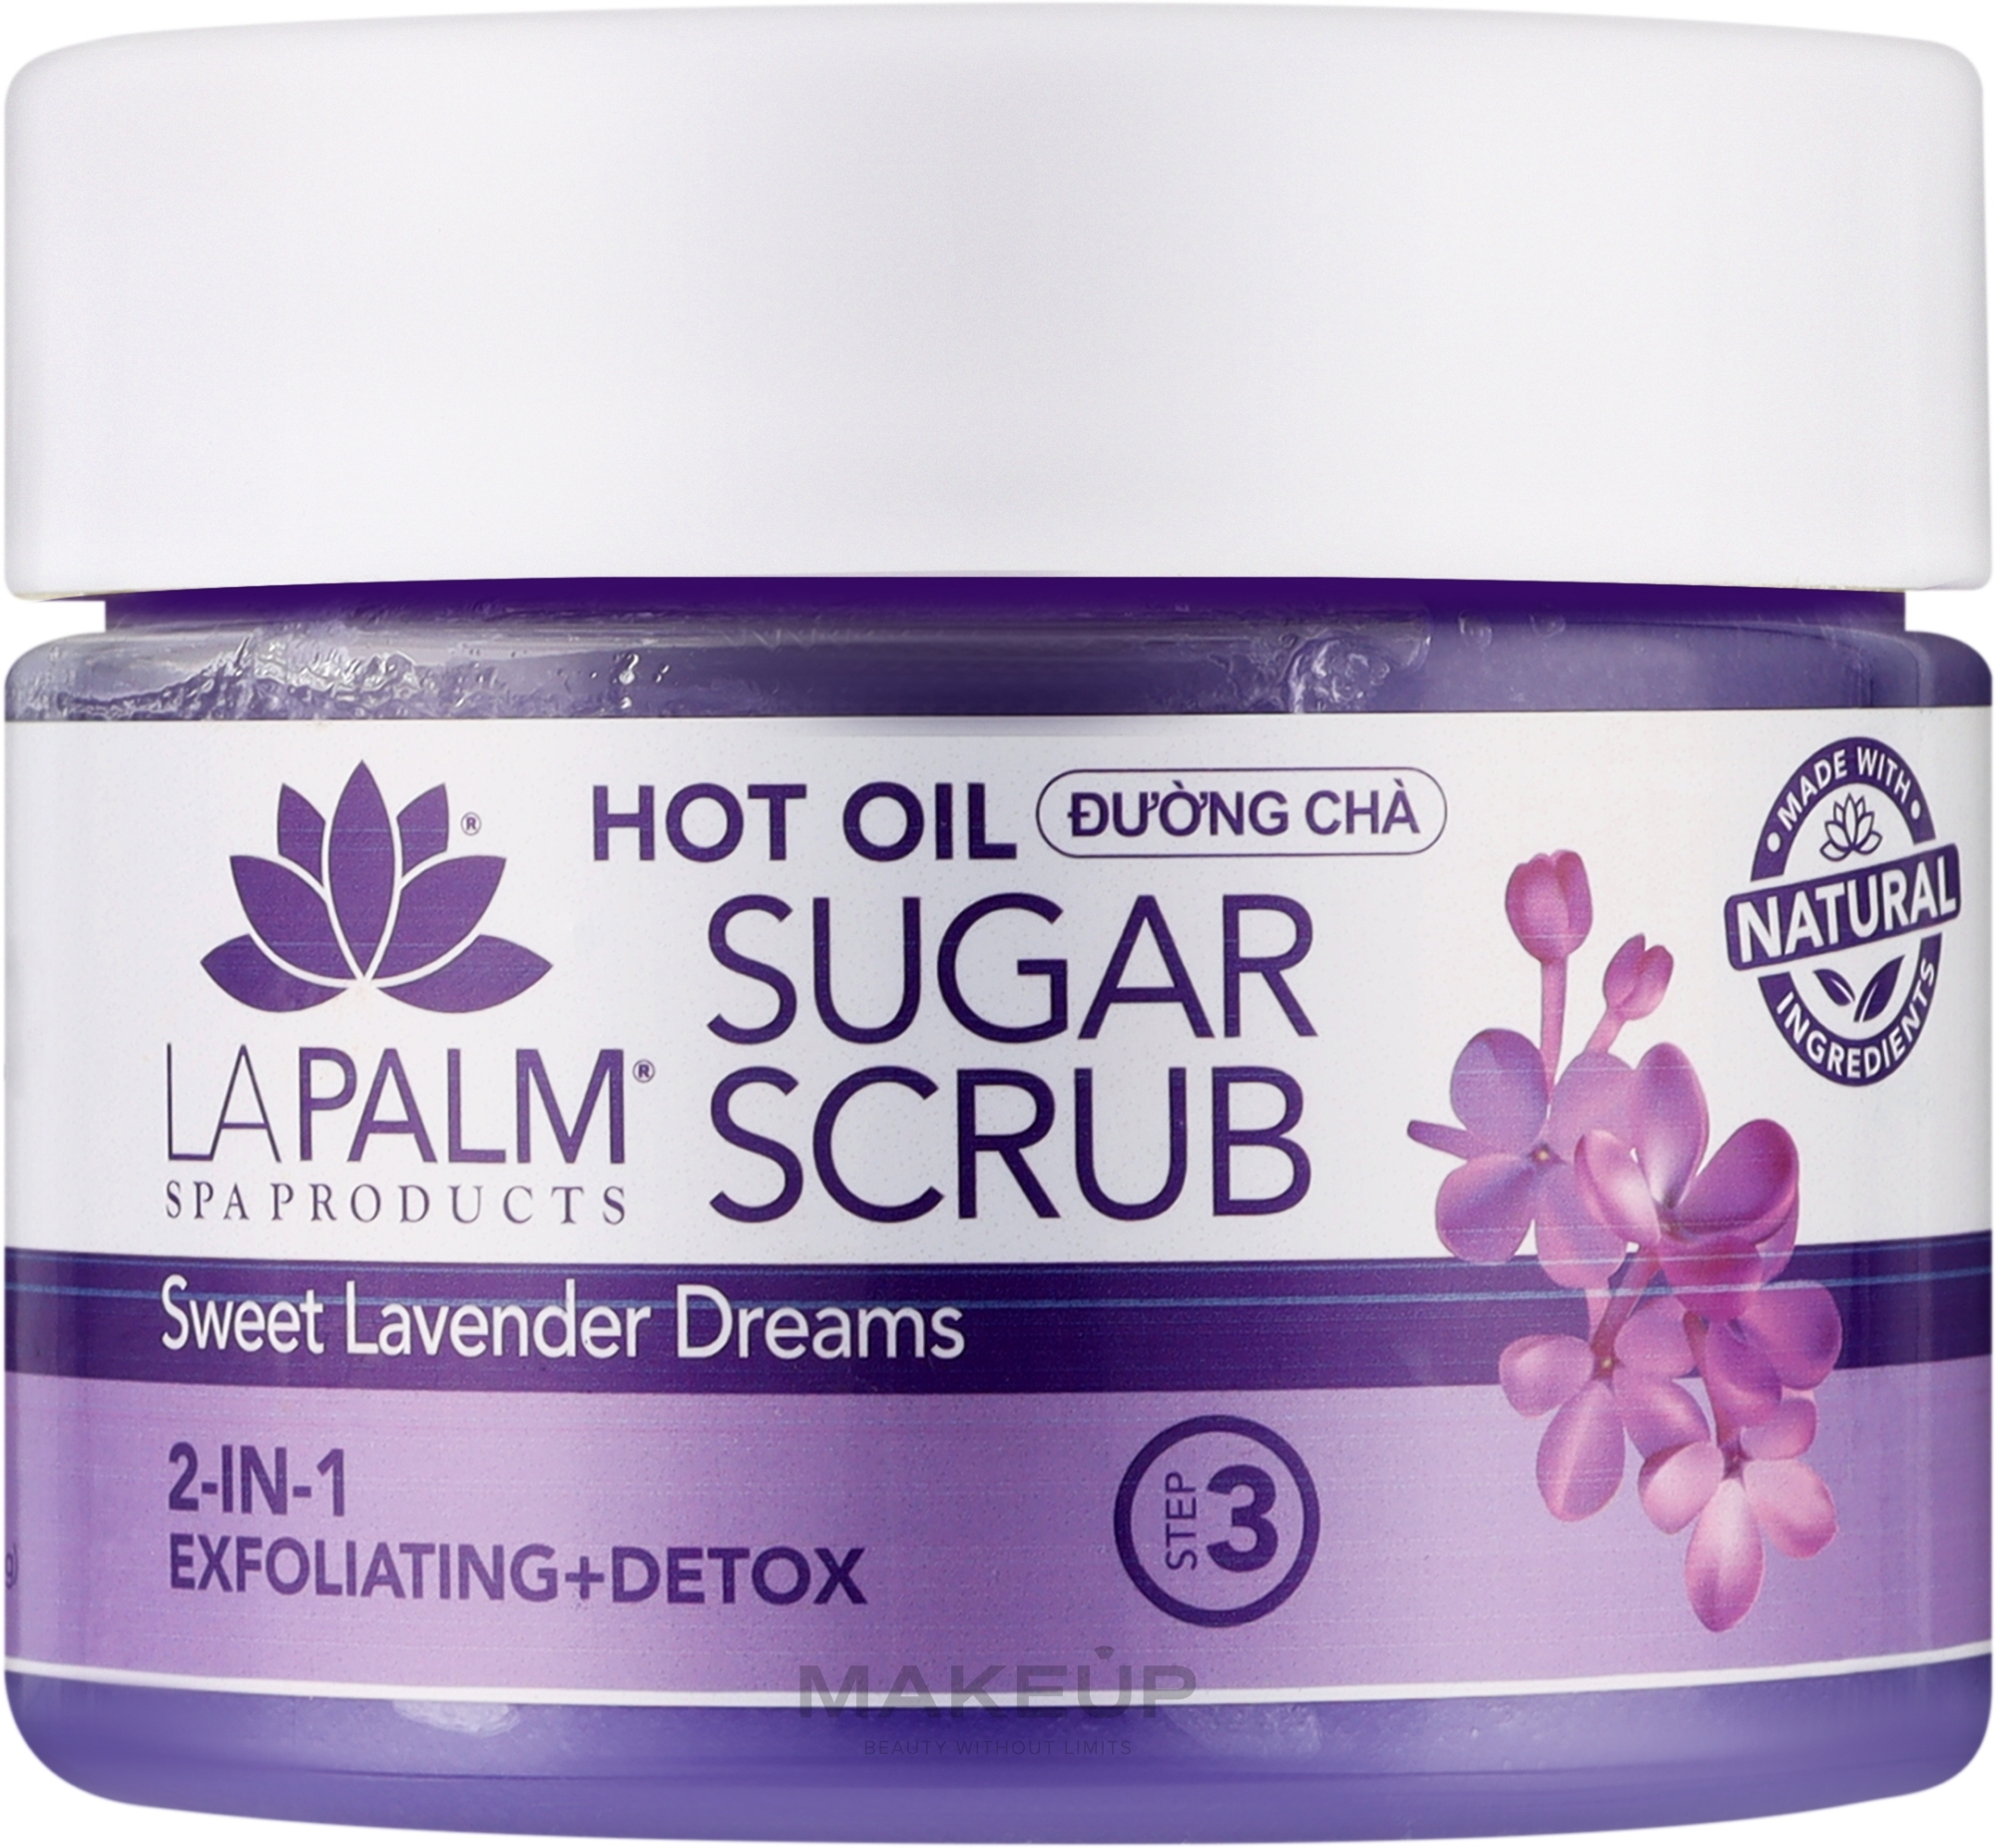 Цукрово-олійний скраб для ніг "Солодкі лавандові сни" - La Palm Hot Oil Sugar Scrub Sweet Lavender Dreams — фото 340g